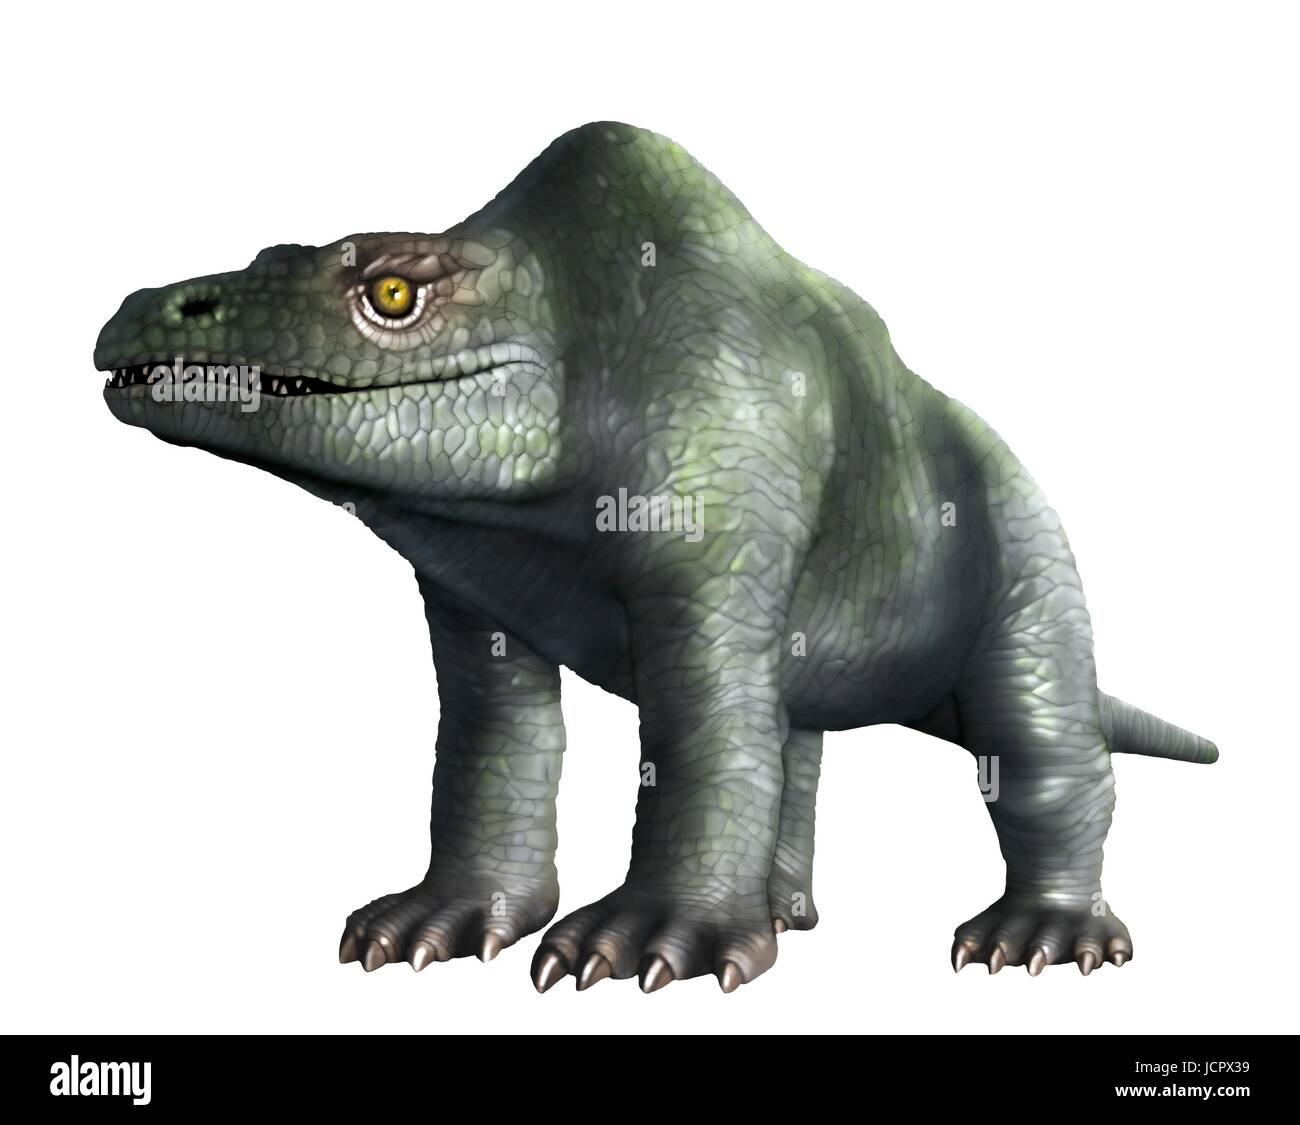 Megalosaurus ist Gattung ausgestorbener Fleisch fressenden Dinosaurier, Theropoden, vom mittleren Jura Periode in der Geschichte der Erde, 166 Millionen Jahre her. Es lebte in der nun südlichen England.die ersten Dinosaurier Fossil jemals gefunden, längst 1676, wahrscheinlich Fragment Oberschenkelknochen war, die Megalosaurus.This gehörte, Tier war mittlere Theropode, 6 bis 7 Meter lang mit einem Gewicht von etwa einer Tonne. Die folgende Abbildung zeigt Tier, wie es ursprünglich vorgestellt wurde, im 19. Jahrhundert zu erscheinen. Das Bild ist auf der Grundlage berühmten Statuen Tier im Londoner Crystal Palace Park. Stockfoto